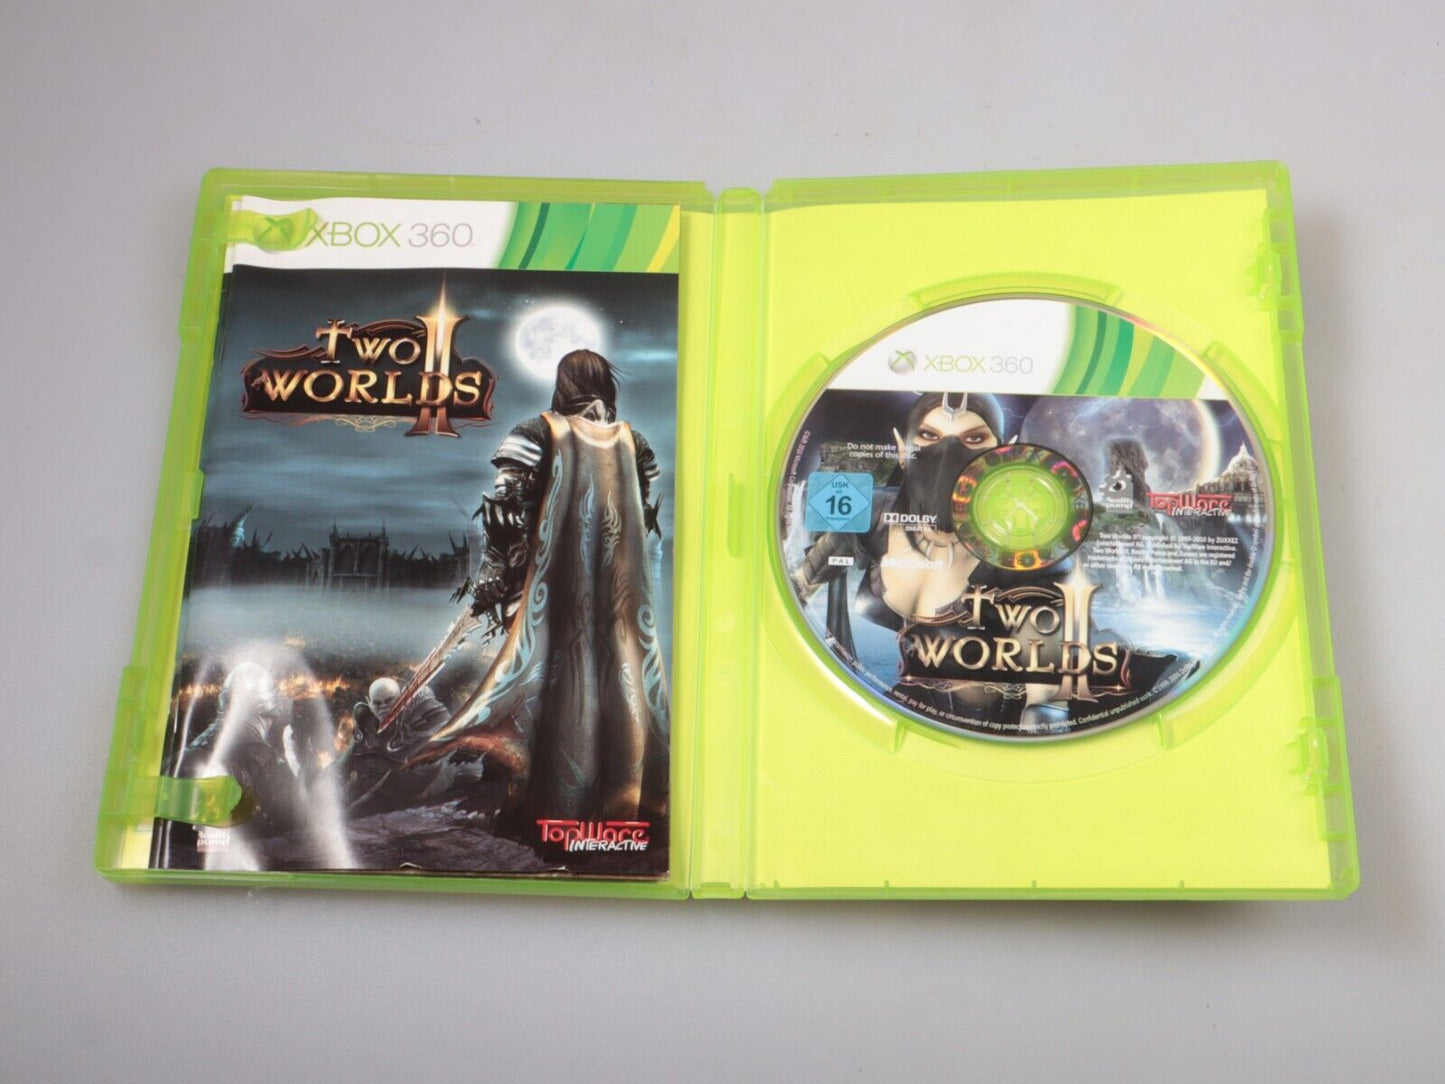 Xbox360 | Twee werelden II 